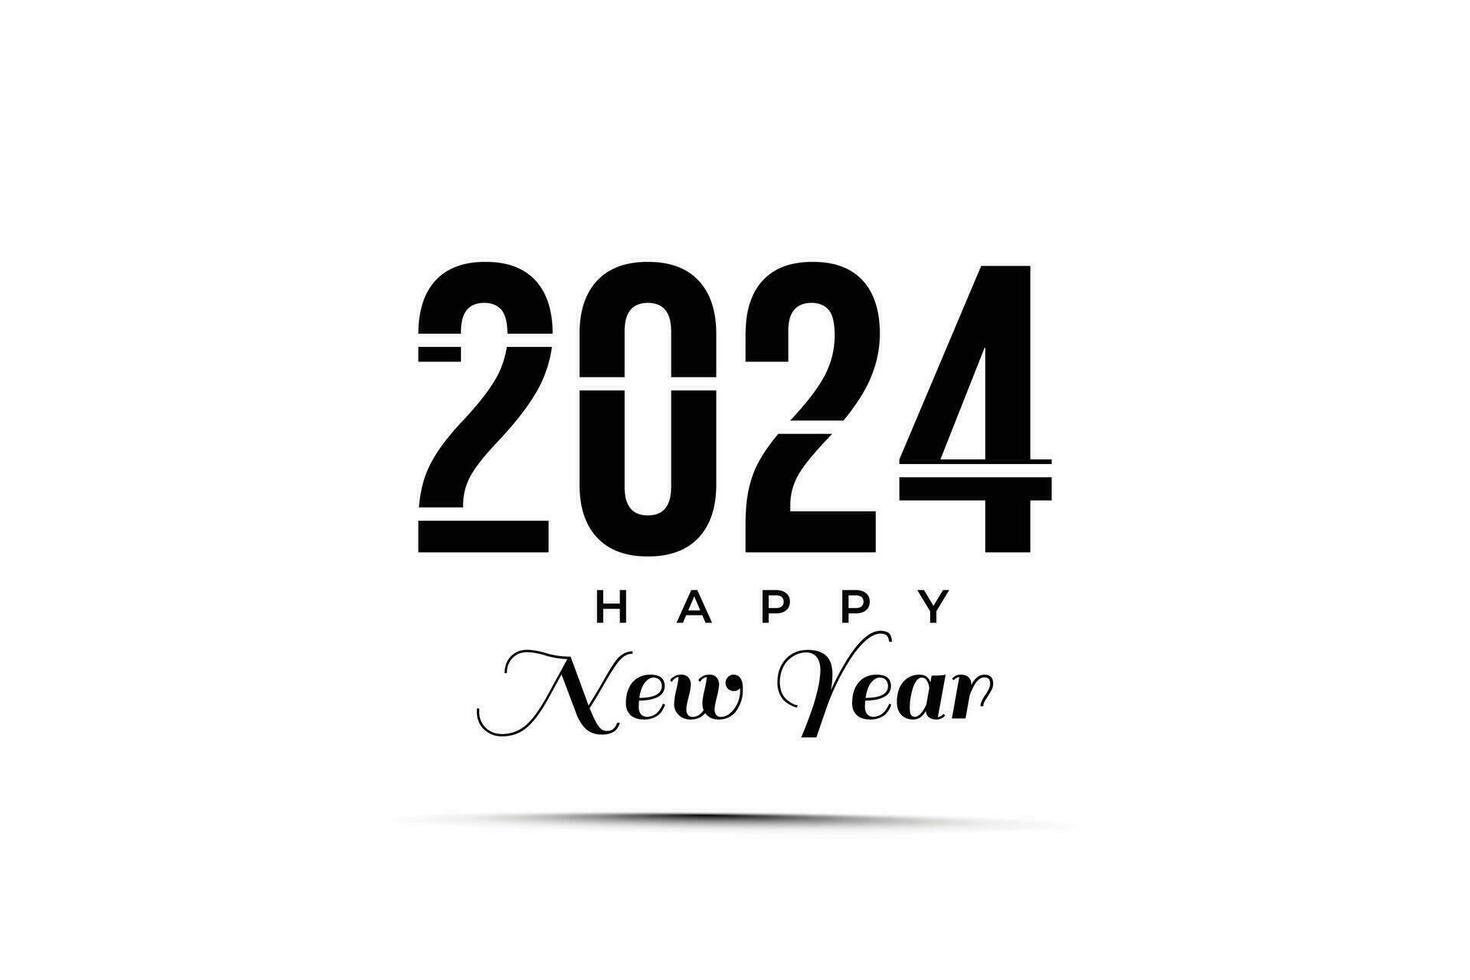 contento nuevo año 2024 creativo de moda texto tipografía diseño vector